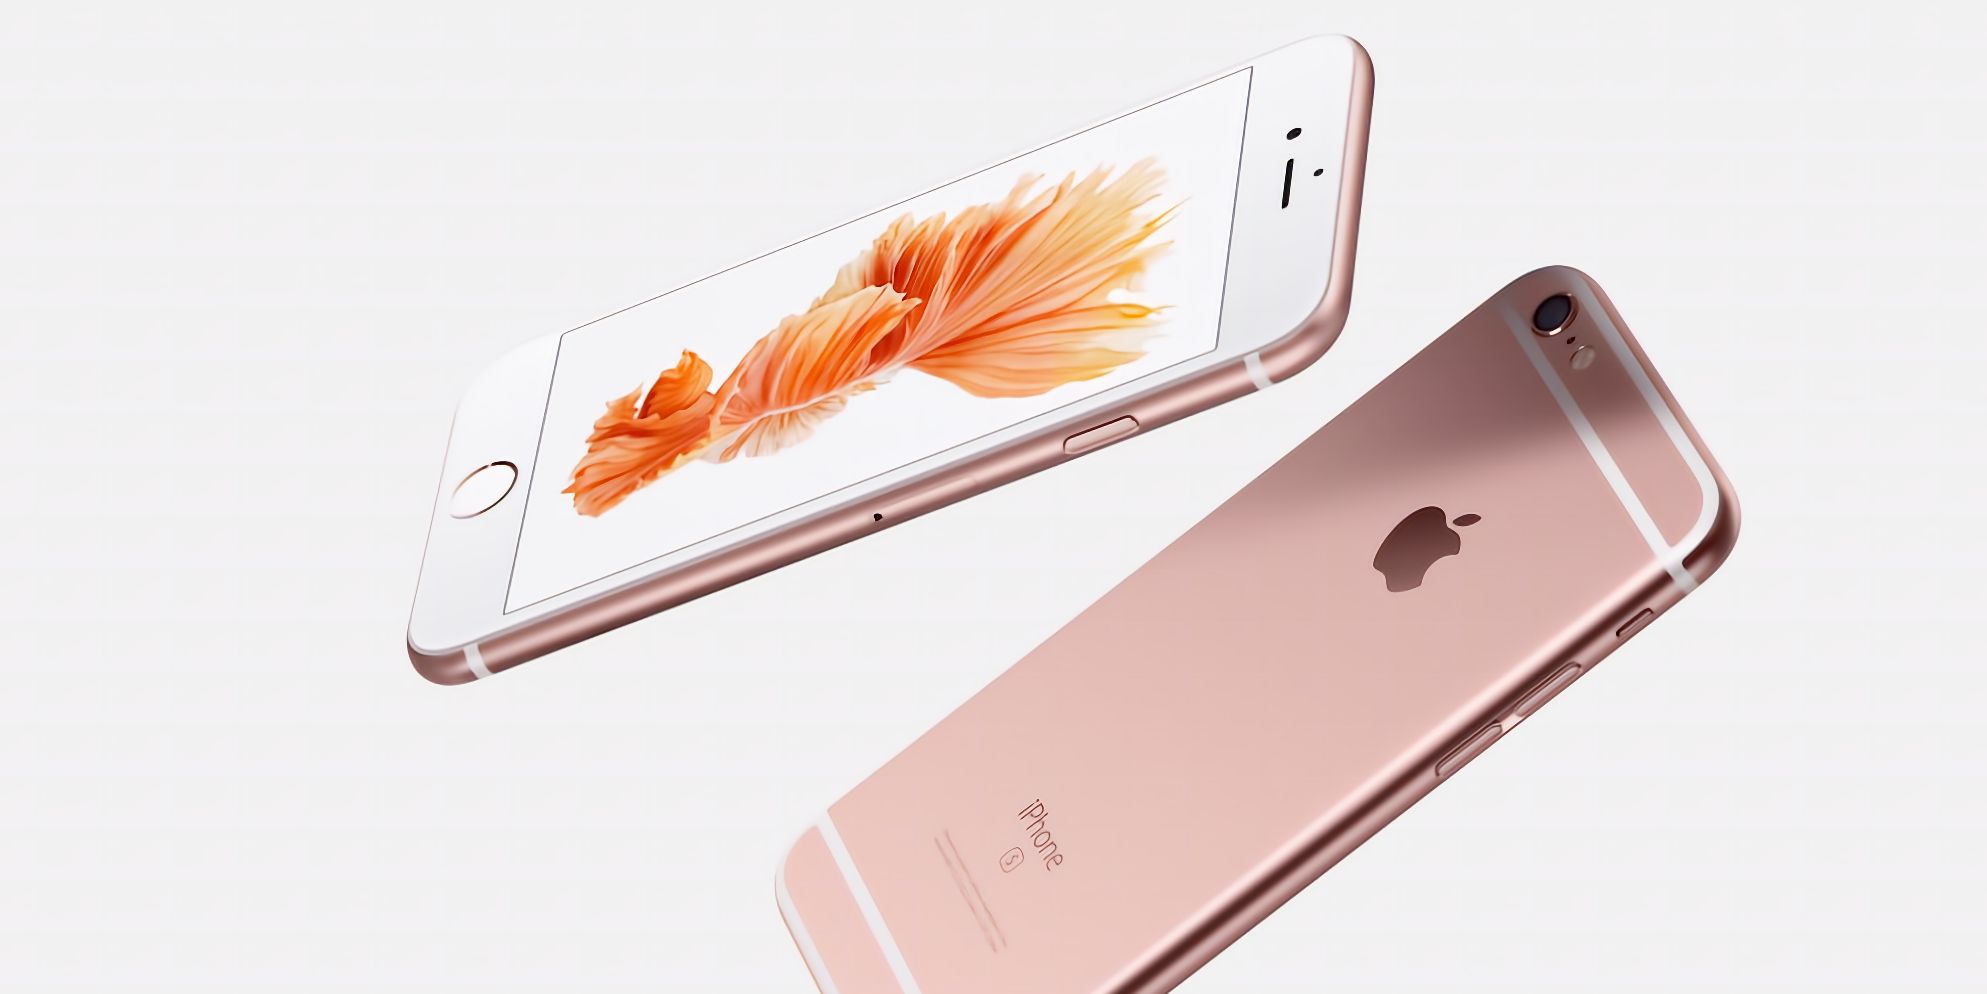 Render resmi iPhone 6s dalam emas mawar